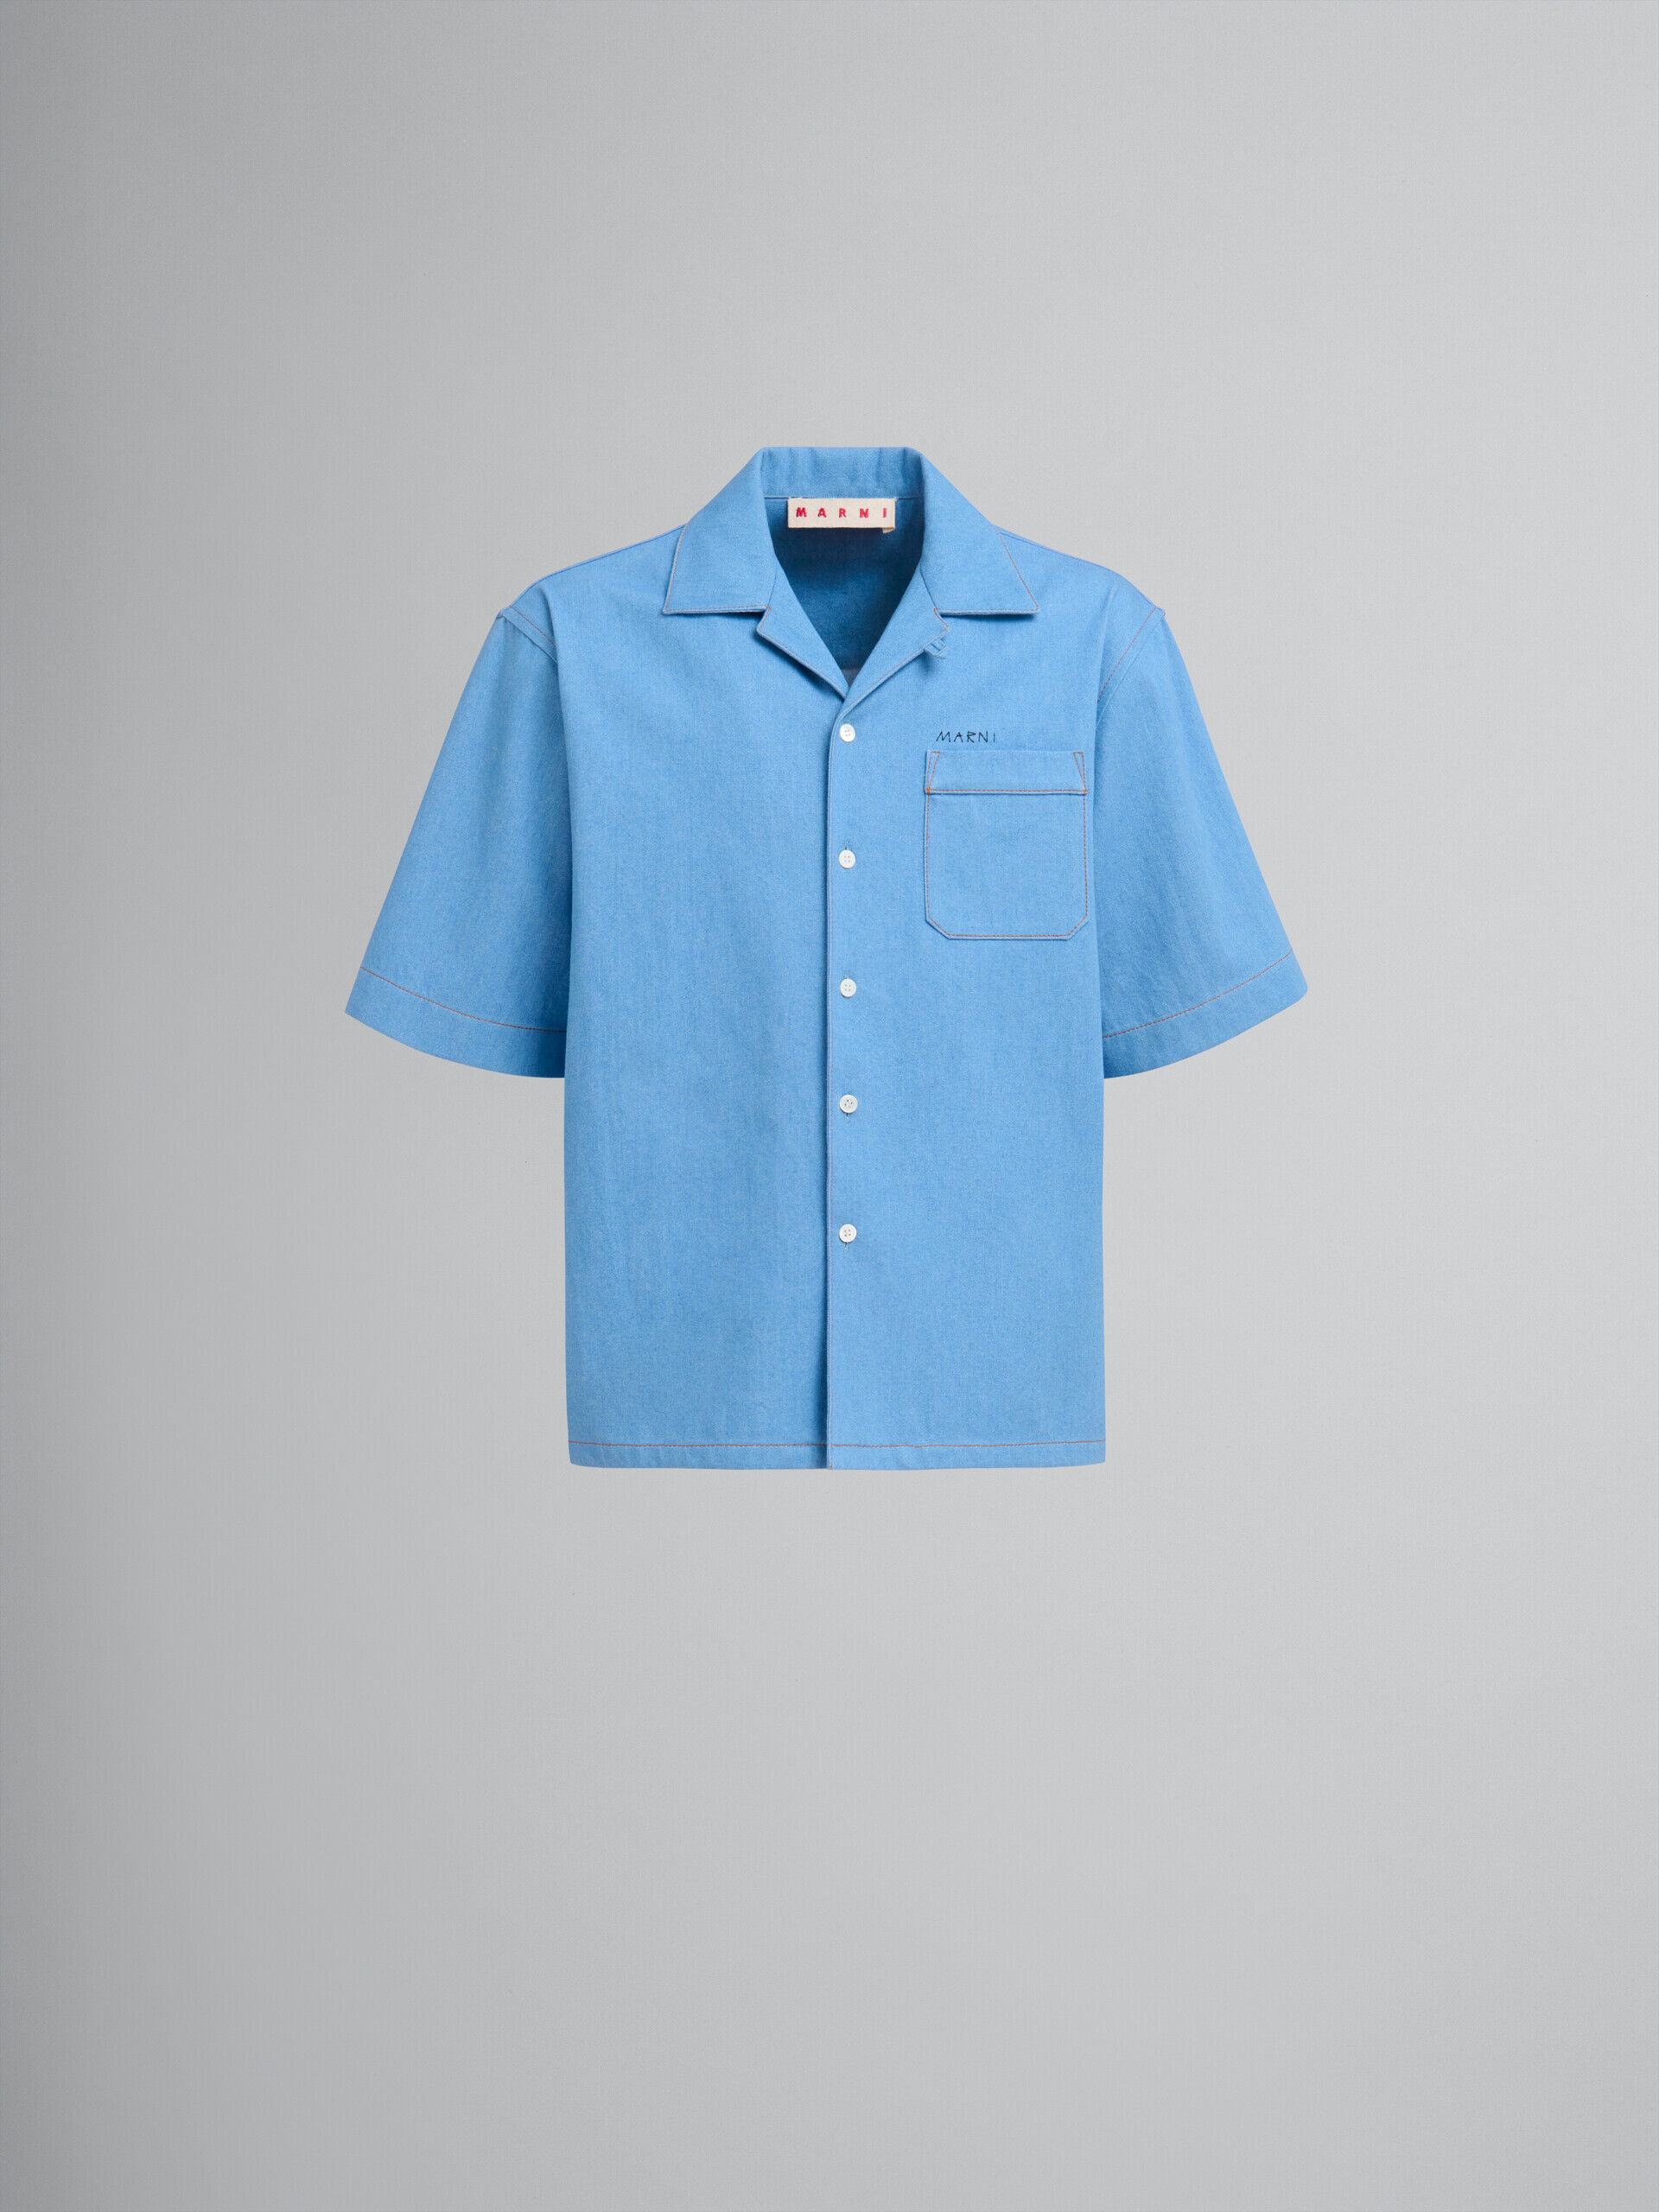 ブルー マルニ メンディングロゴ付き デニム製 ボーリングシャツ | Marni